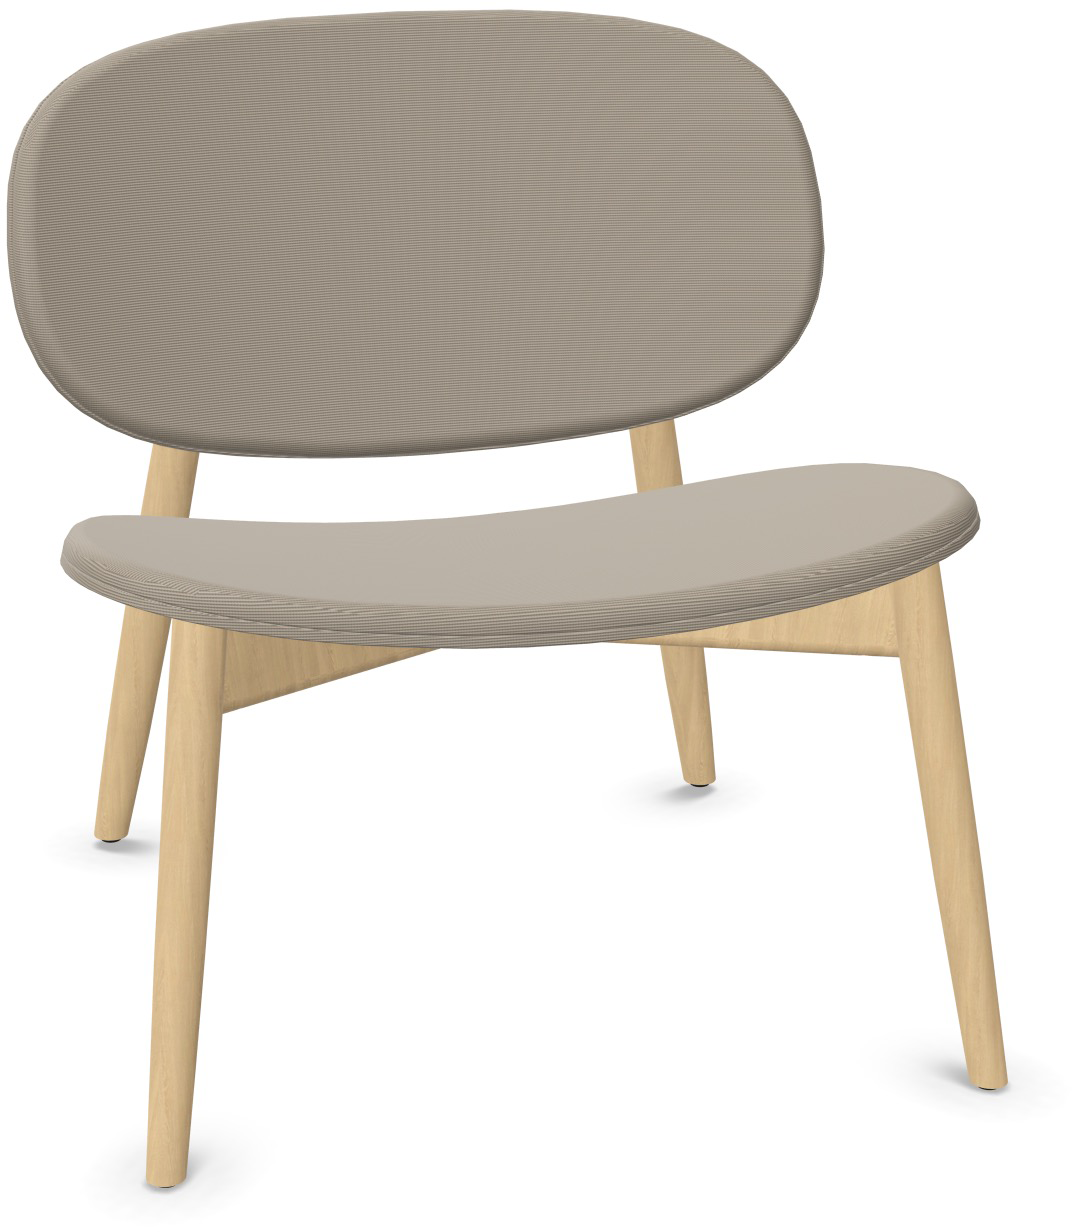 HARMO Relaxsessel in Beige präsentiert im Onlineshop von KAQTU Design AG. Sessel ist von Infiniti Design